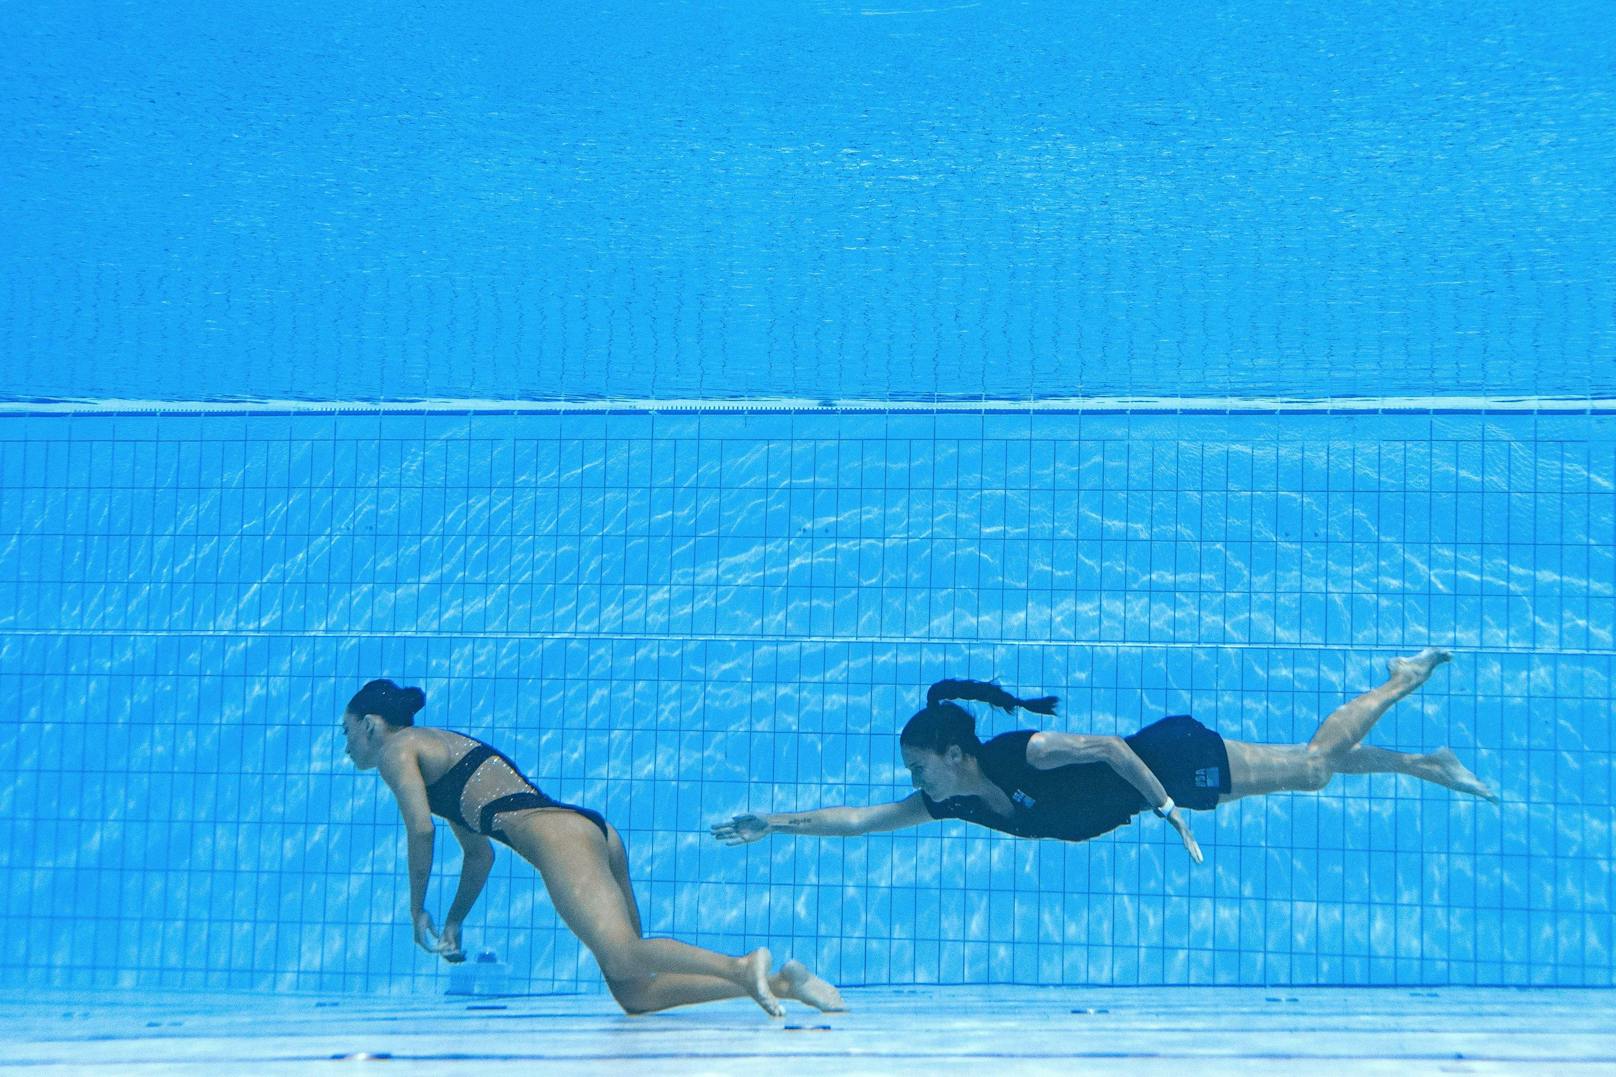 US-Synchronschwimmerin Anita Alvarez kollabiert im Becken. Ihre Trainerin Andrea Fuentes wird zur Lebensretterin. Es handelte sich um einen Schwächeanfall in Folge von Stress und Überbelastung.